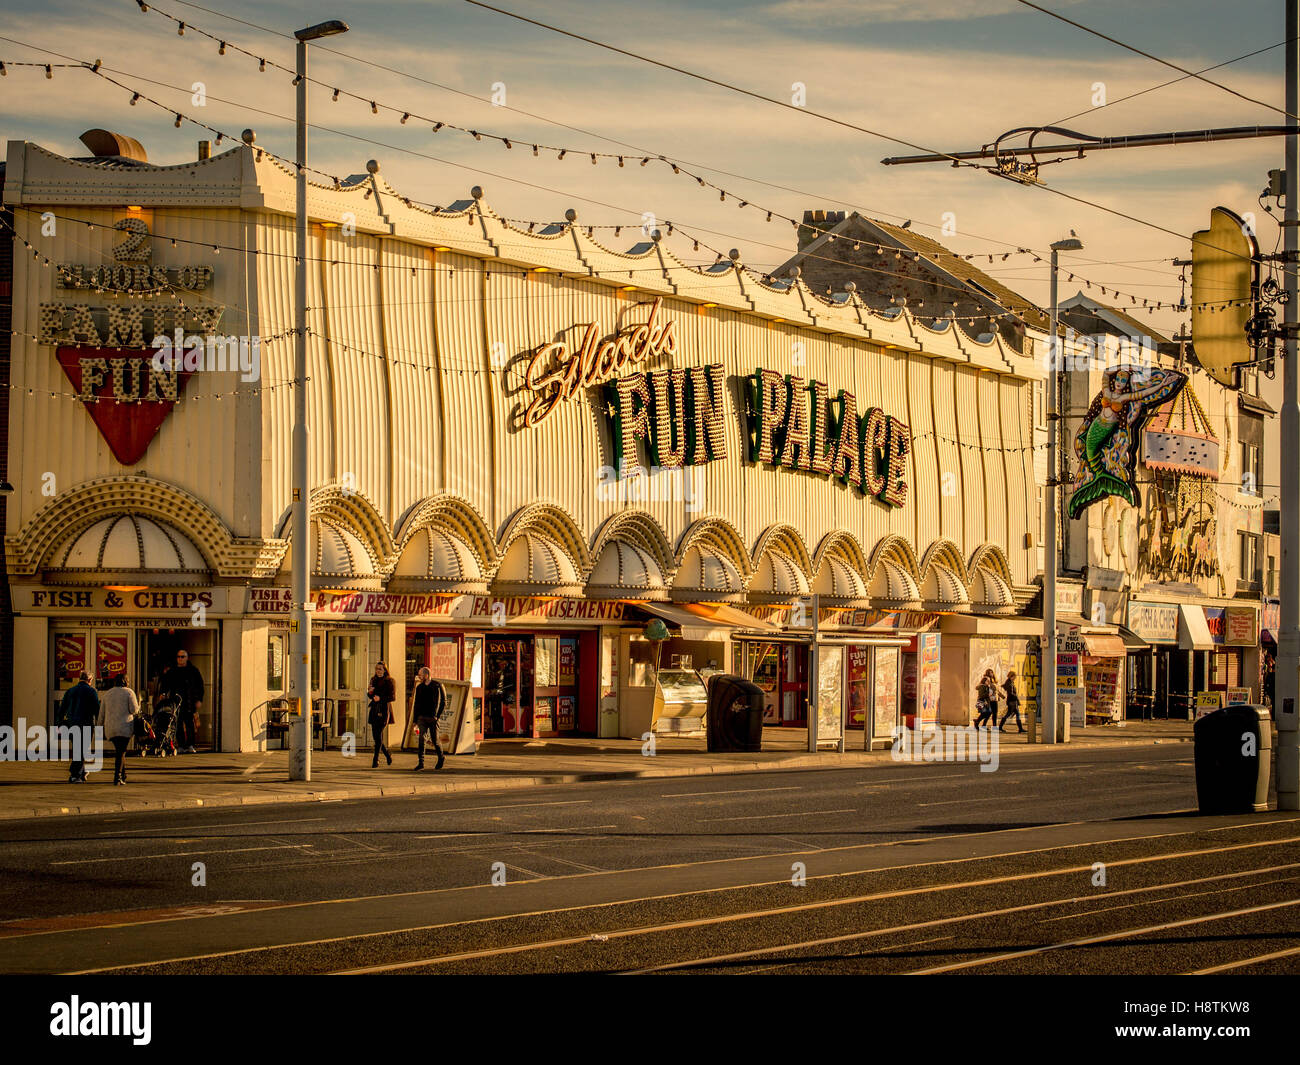 Fun Palace bingo and amusements, Promenade, Blackpool, Lancashire, UK. Stock Photo